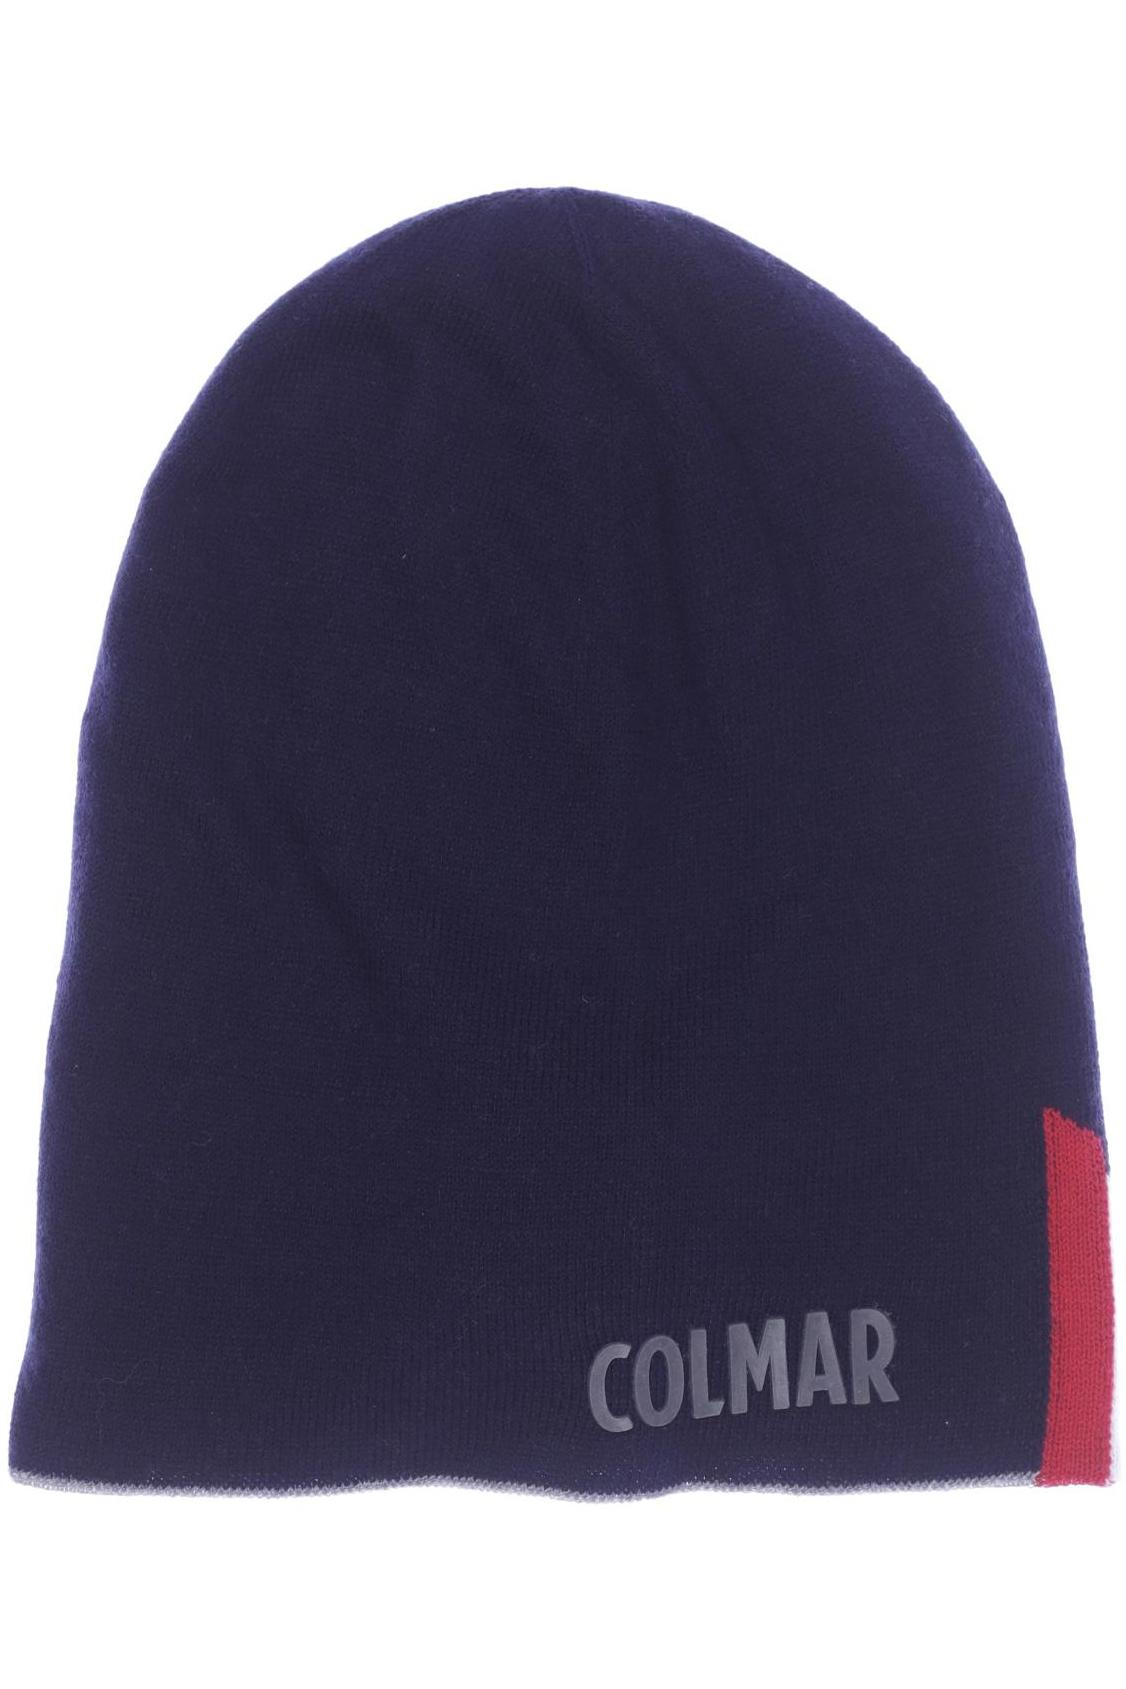 Colmar Herren Hut/Mütze, marineblau, Gr. uni von Colmar